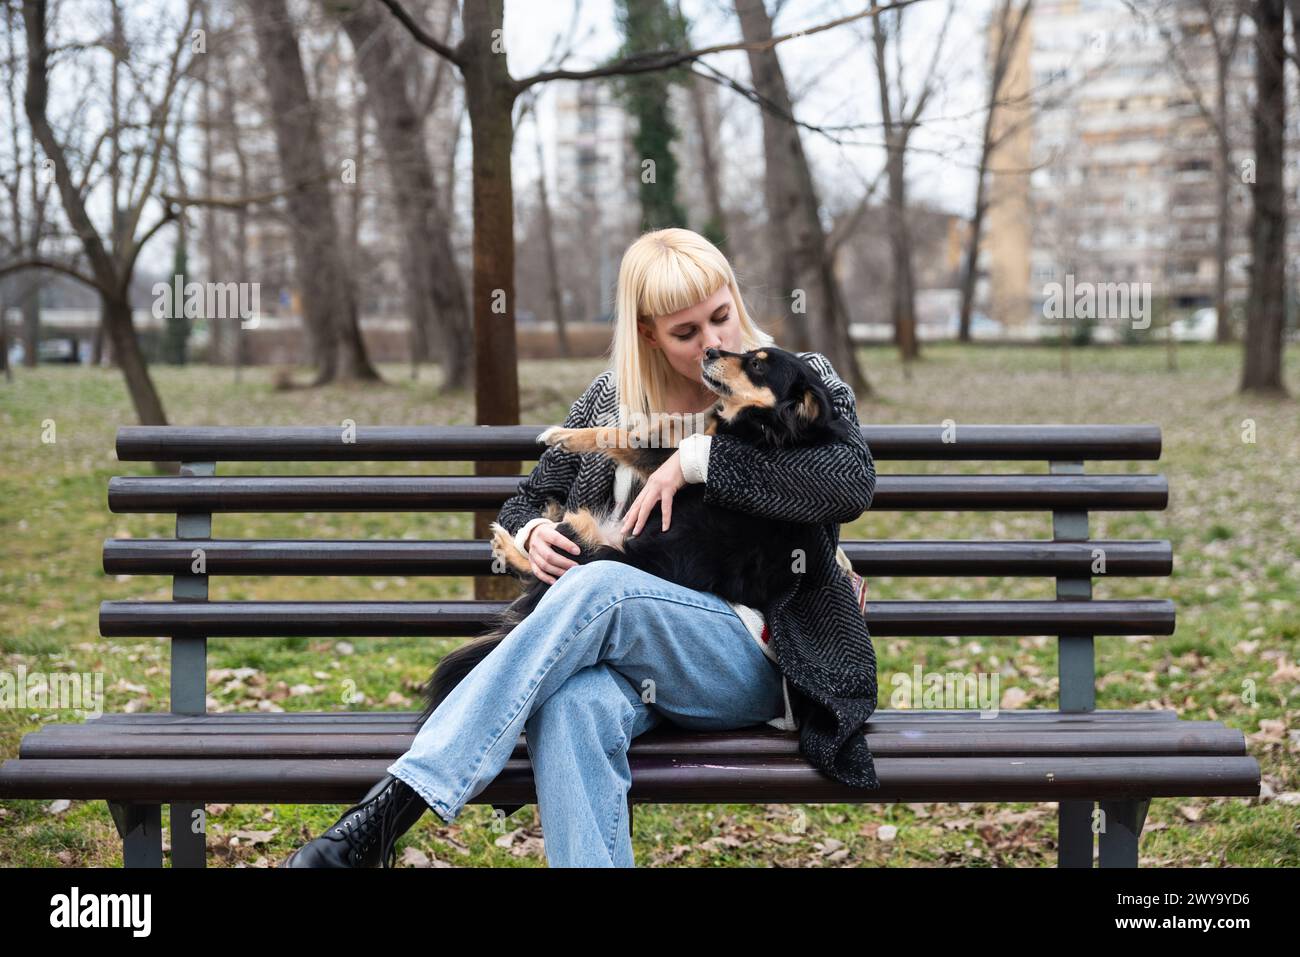 La giovane generazione Z hipster ragazza seduta in un parco su una panchina con il suo cane adottato, che ha salvato dalla strada dalla fame, e gli dà amore Foto Stock